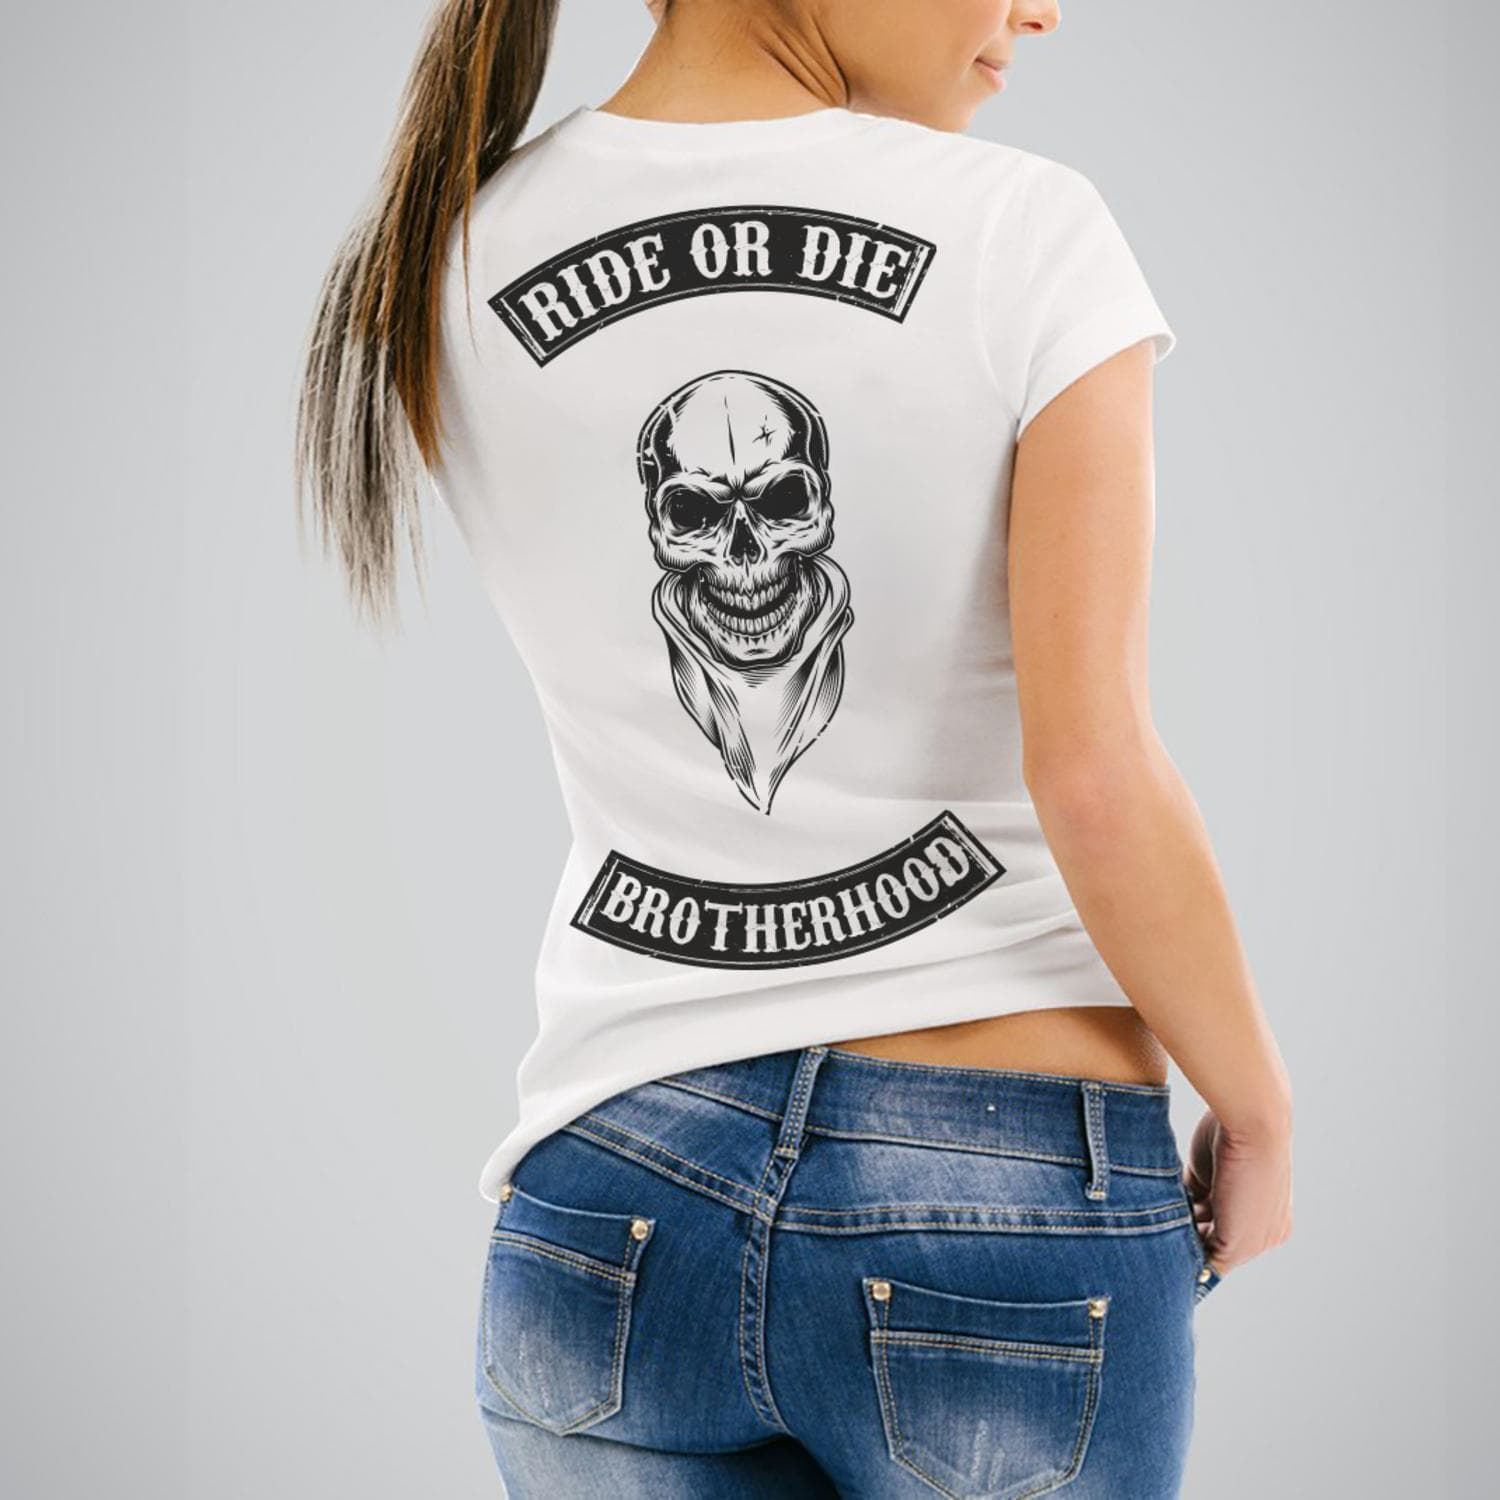 Tshirt  Ride or Die 1  - Femme